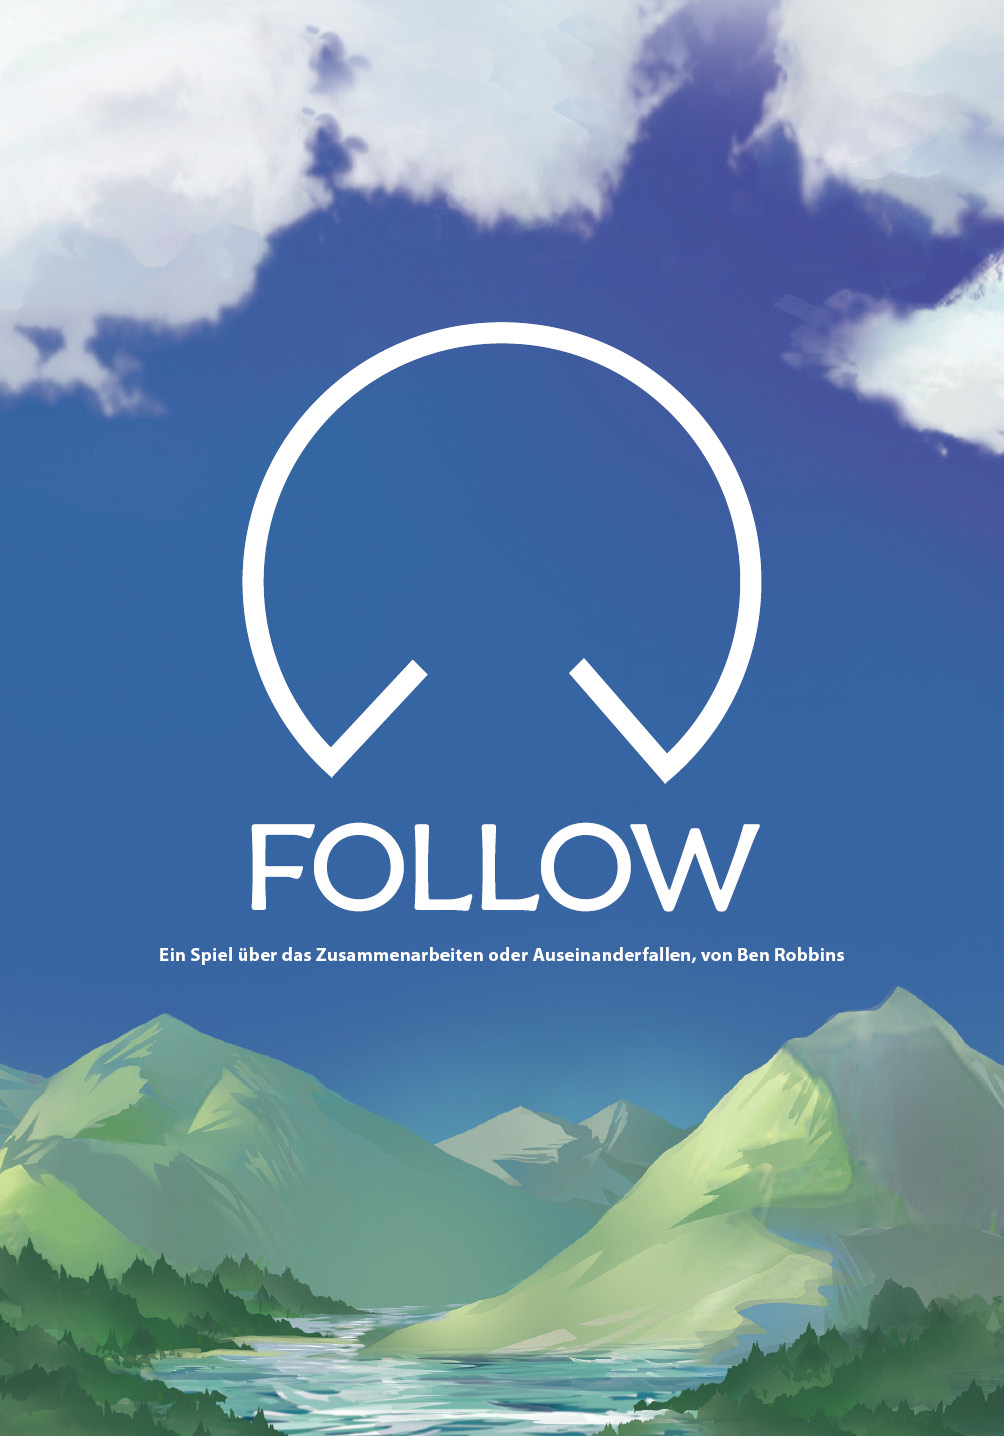 Cover von Follow - ein Spiel über das Zusammenarbeiten oder Auseinanderfallen, von Ben Robbins. Im Hintergrund blauer Himmel mit weißen Wölkchen und grün-graue Berge am unteren Bildrand.